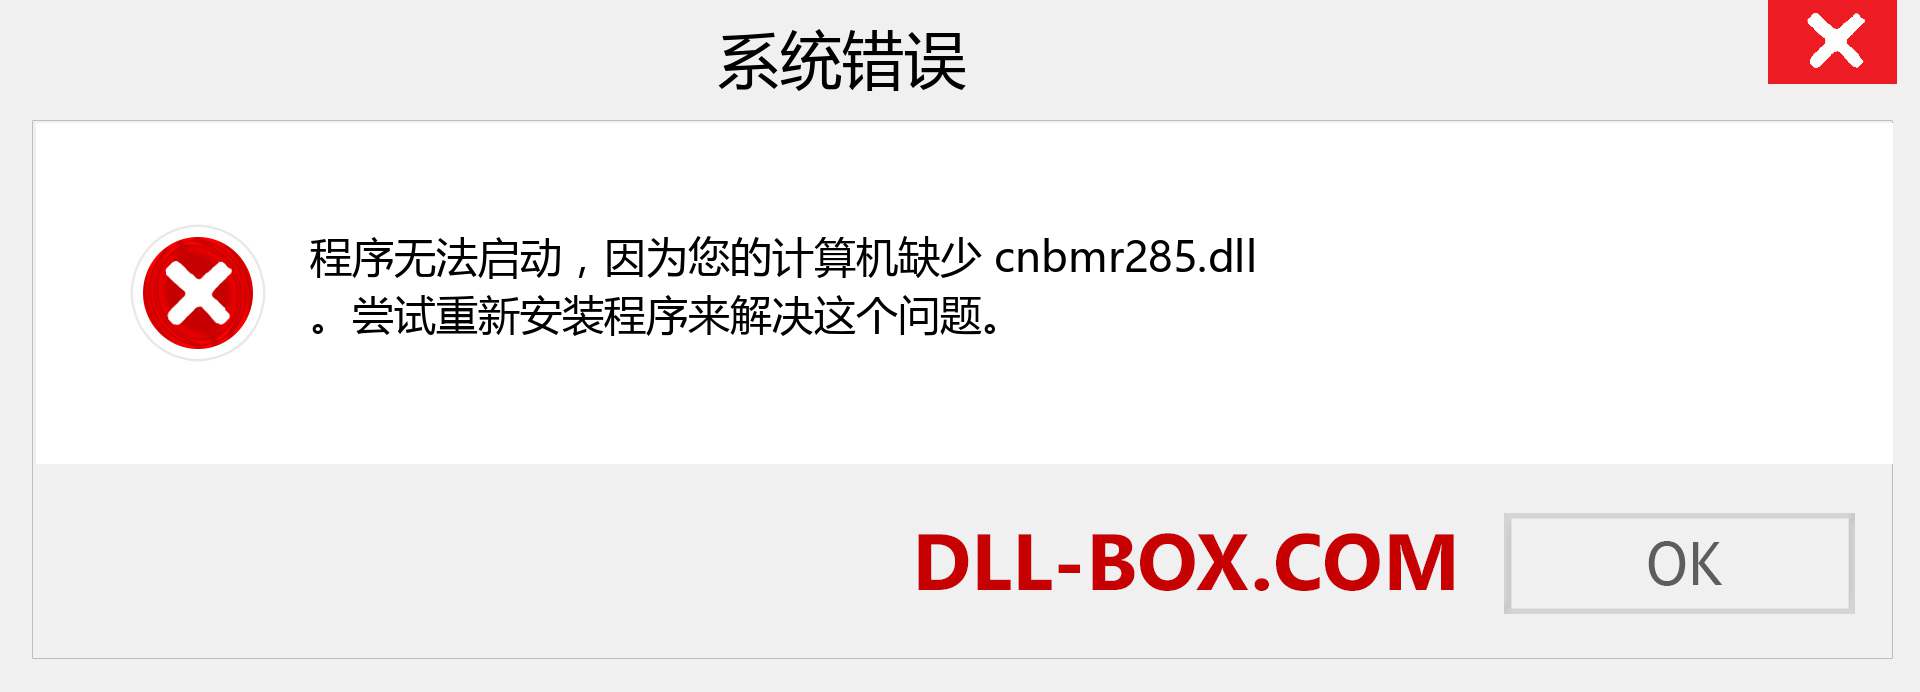 cnbmr285.dll 文件丢失？。 适用于 Windows 7、8、10 的下载 - 修复 Windows、照片、图像上的 cnbmr285 dll 丢失错误